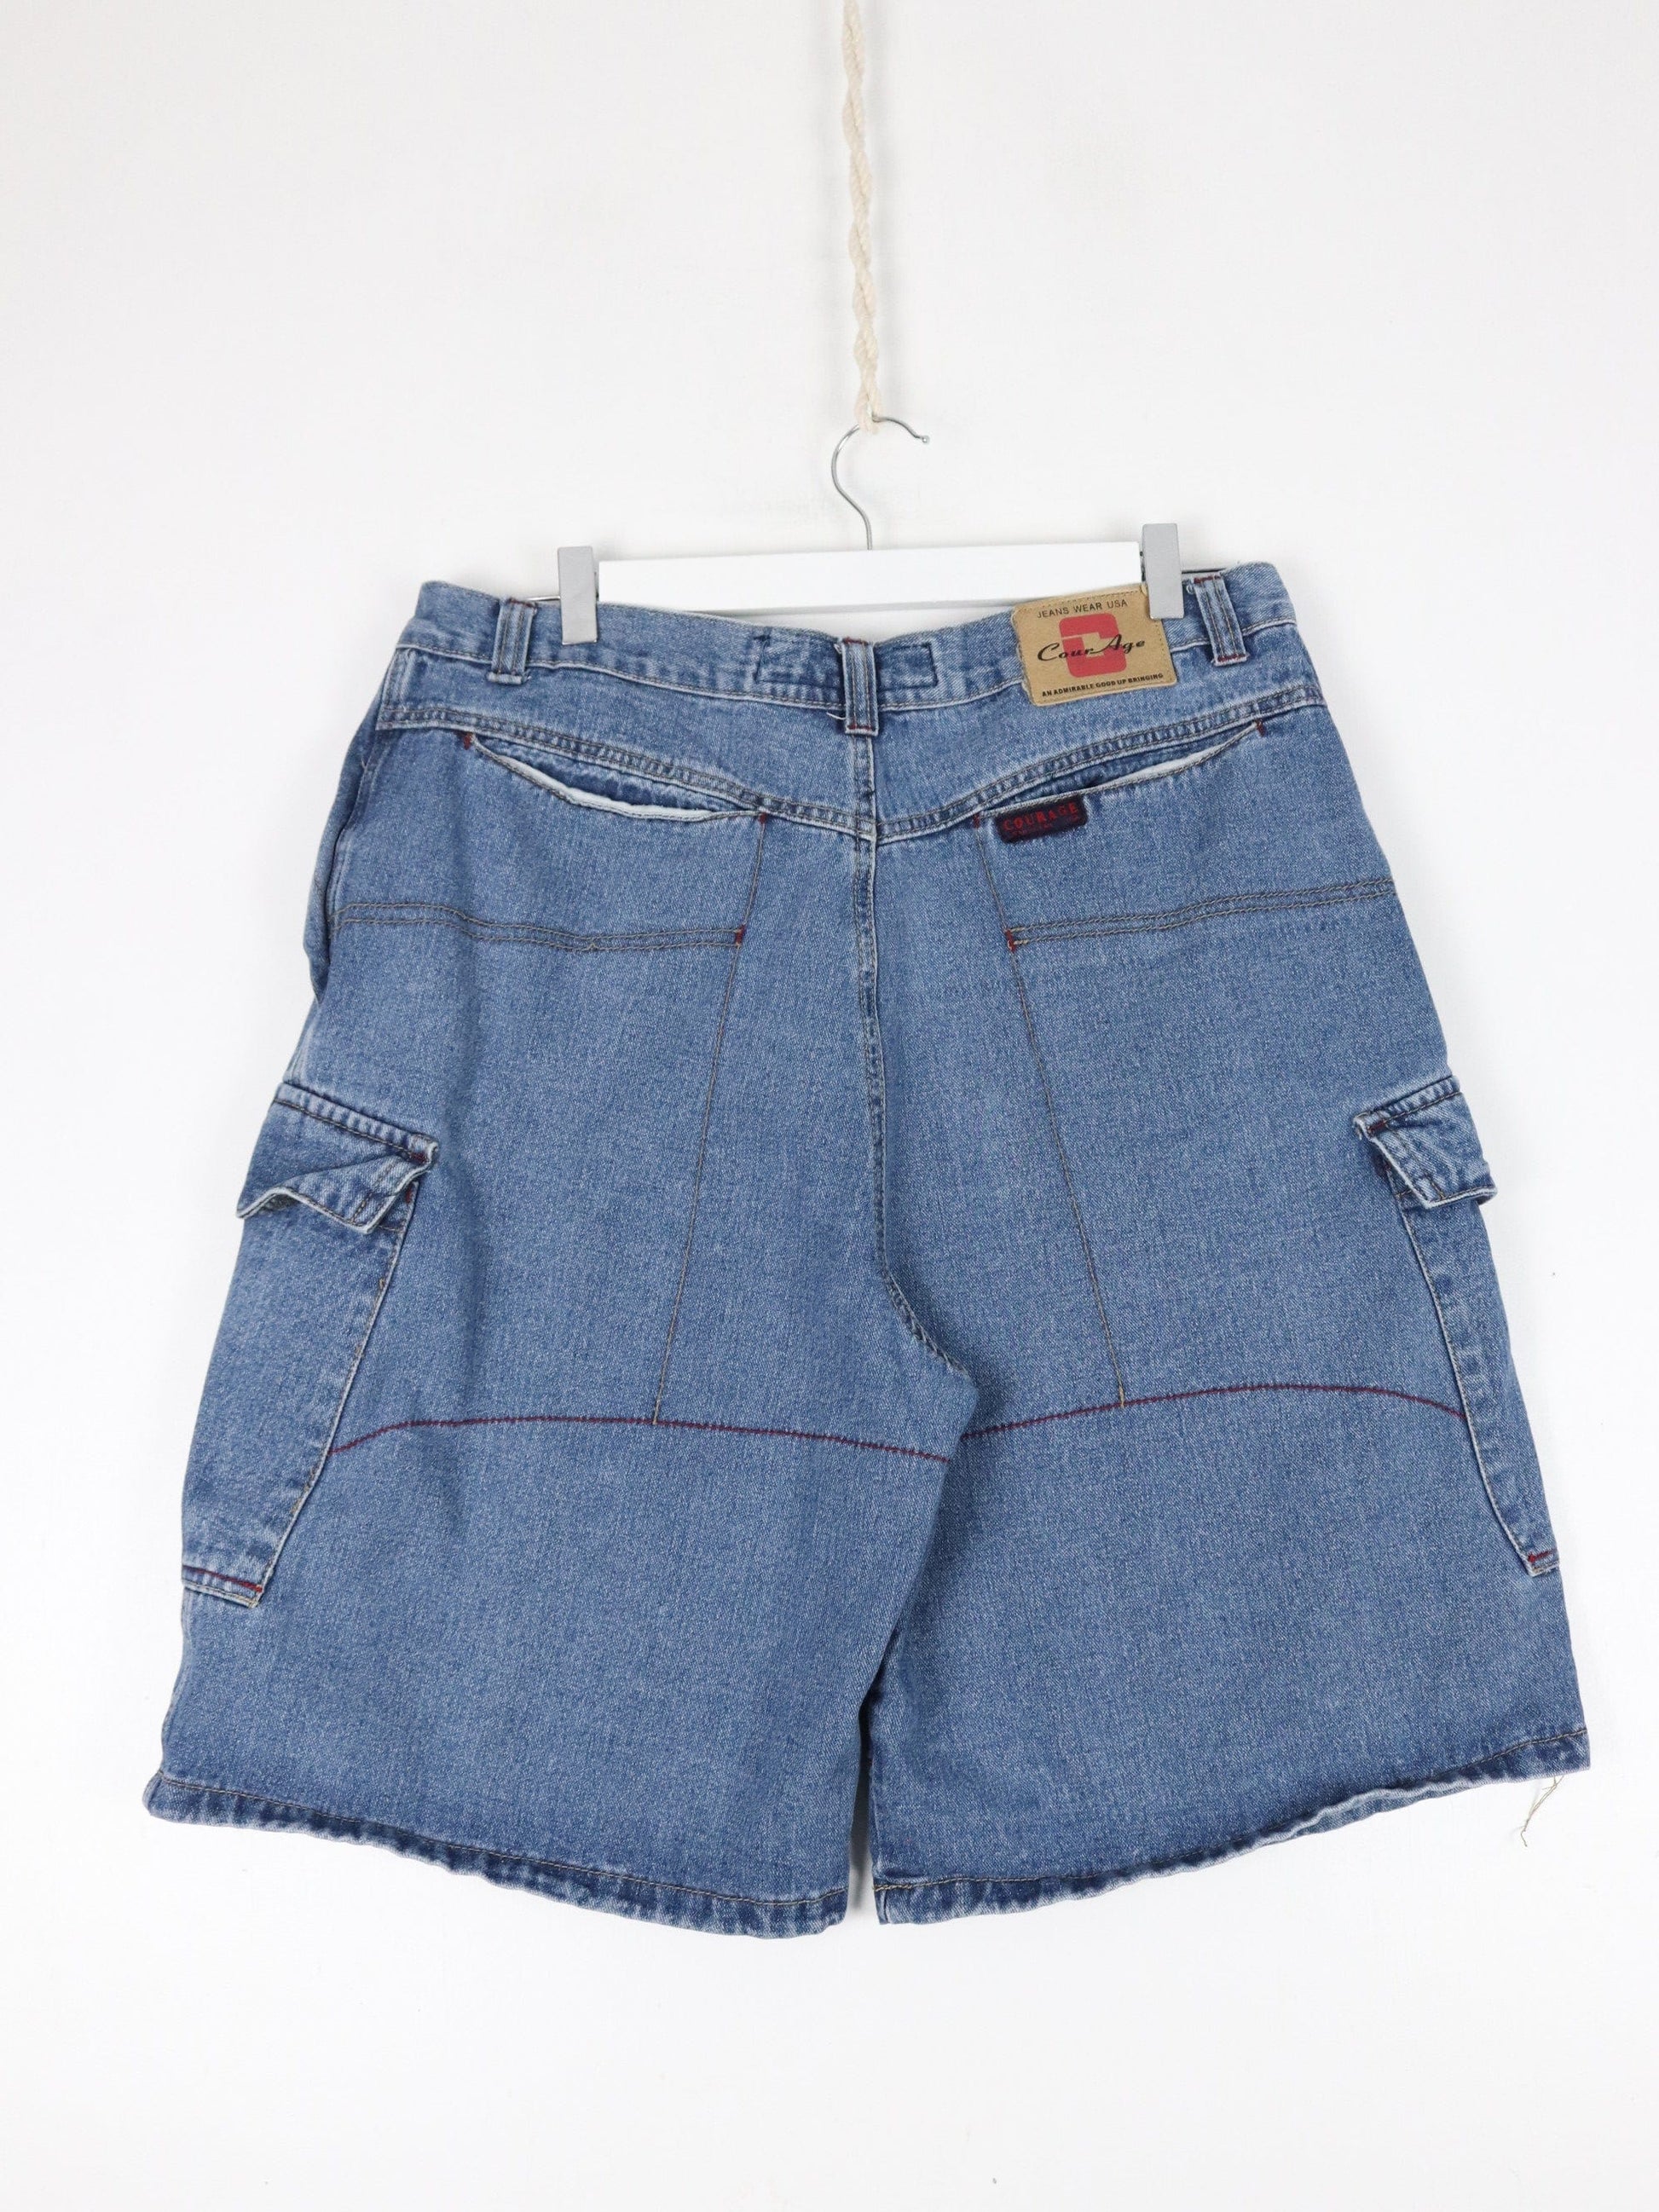 Other Shorts Vintage Courage Shorts Fits Mens 32 Blue Denim Jorts